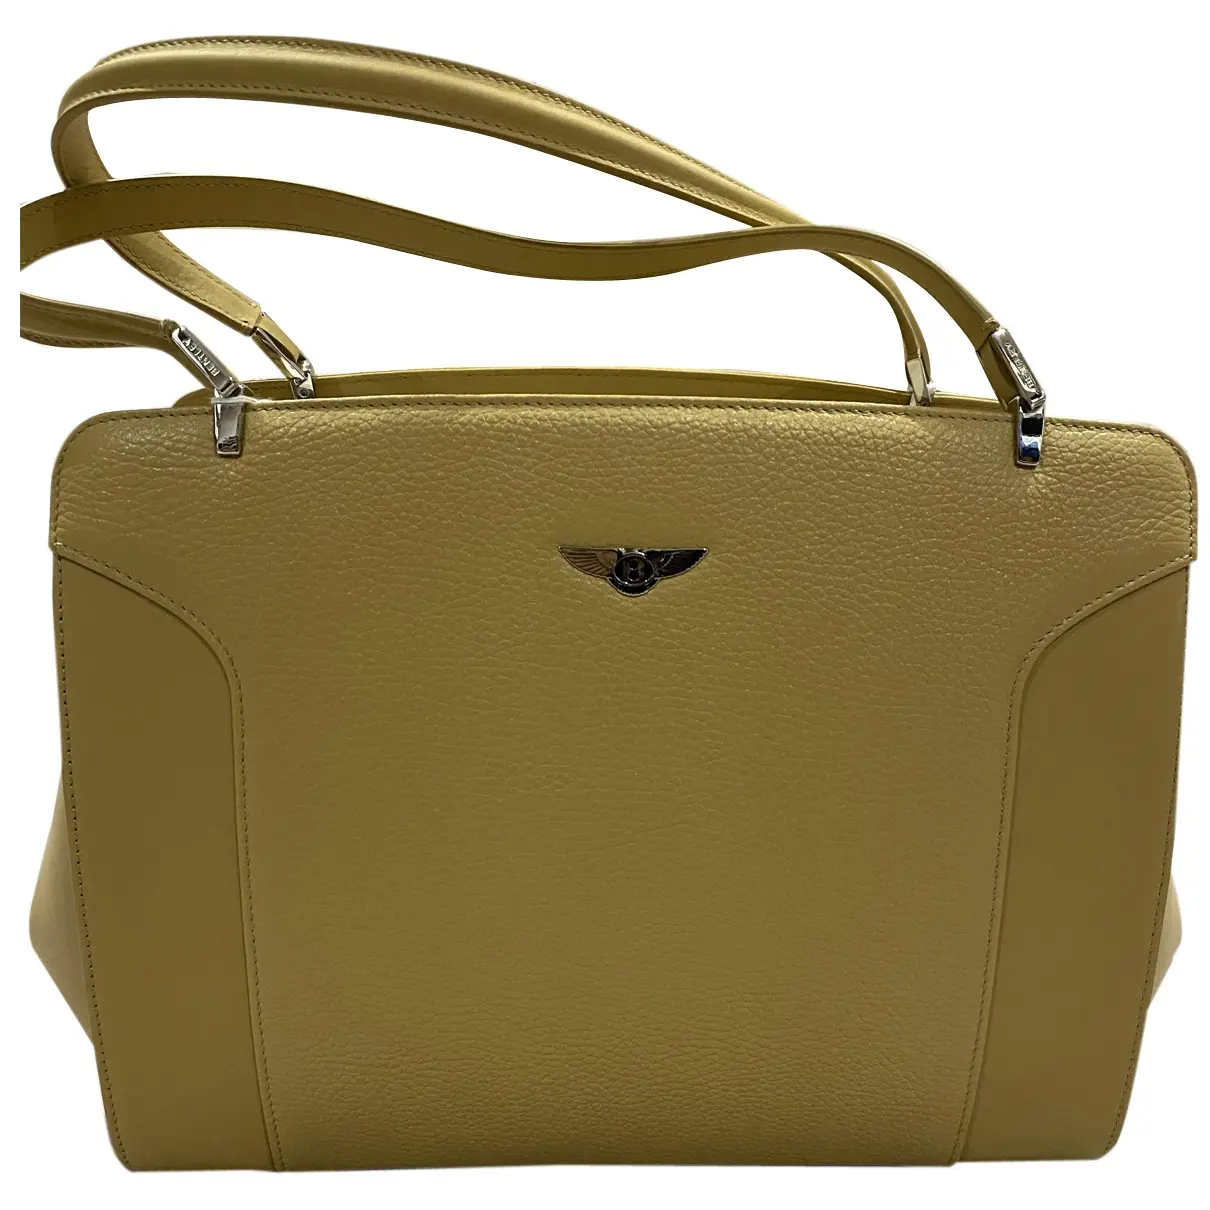 Leather handbag Bentley